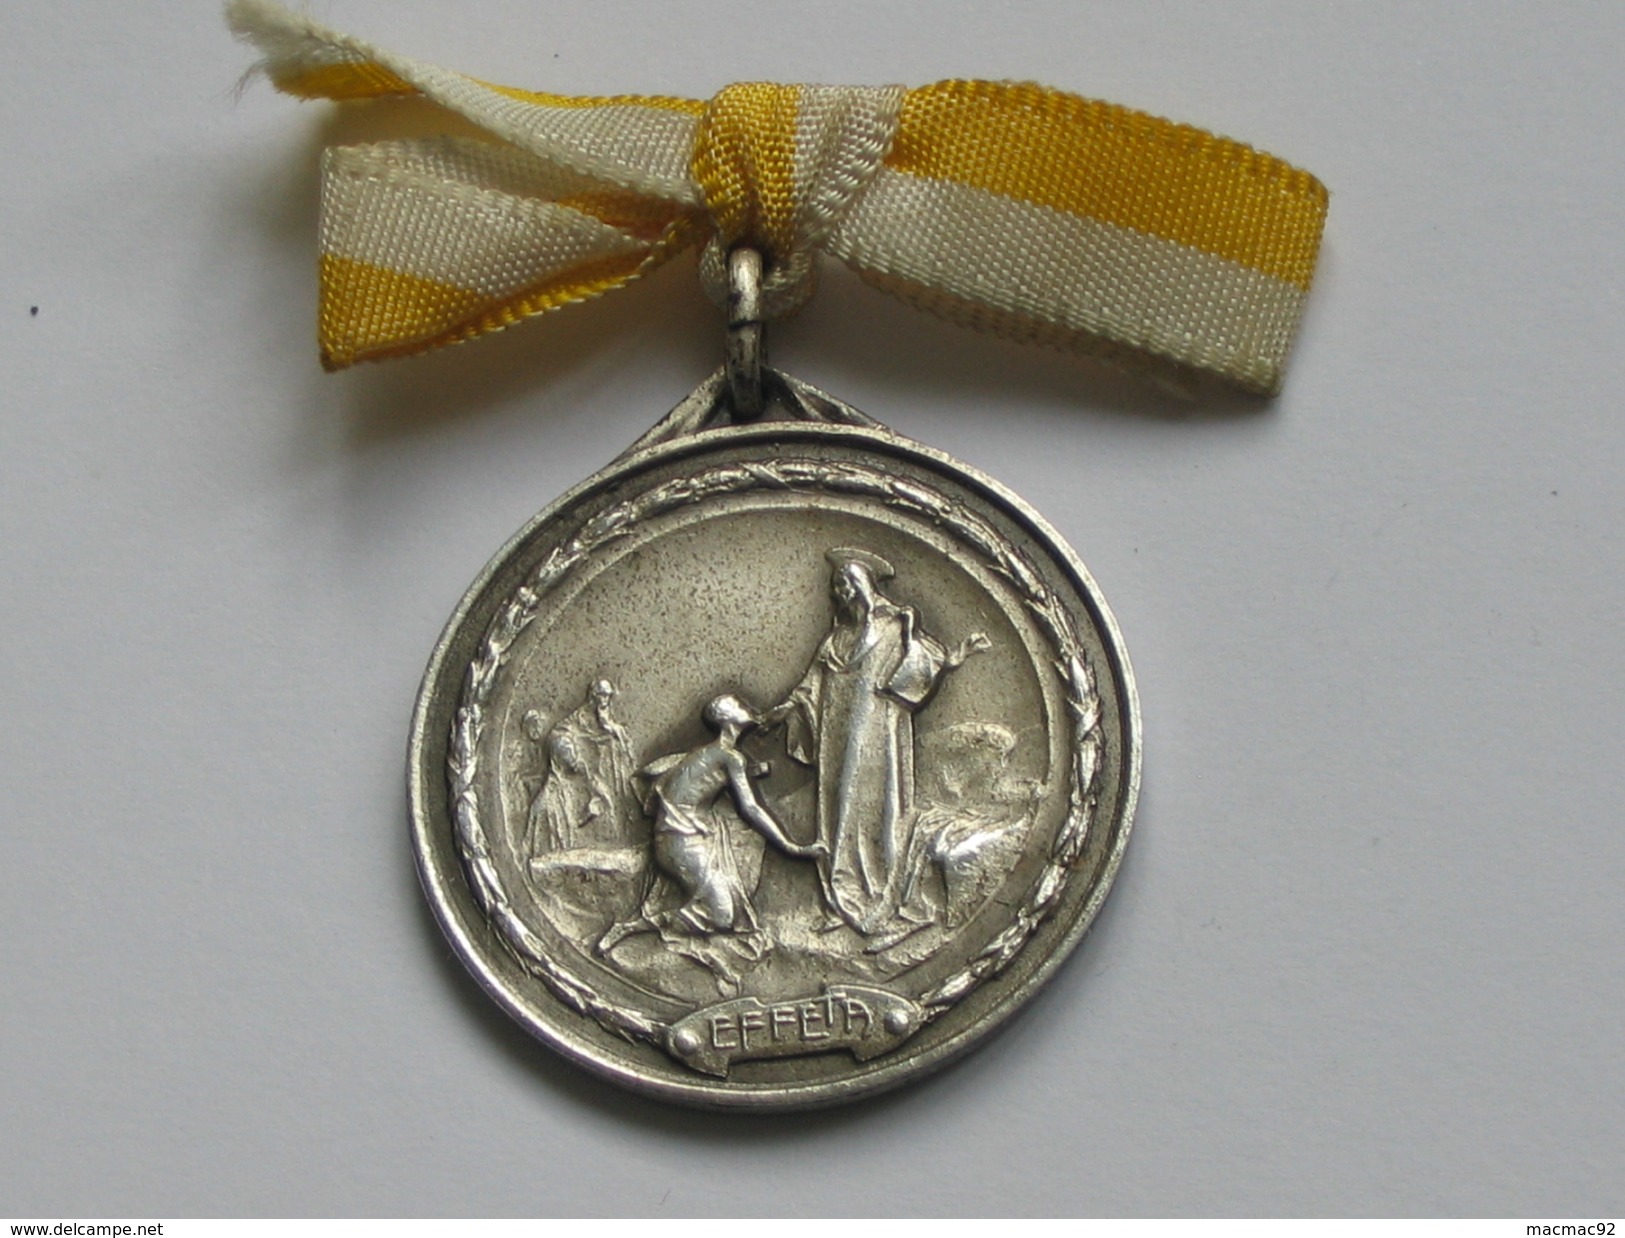 Médaille Religieuse Chrétienne  - Pellegrinaggio Internazionale Sordomuti - Roma Anno MCML *** EN ACHAT IMMEDIAT *** - Religion & Esotérisme